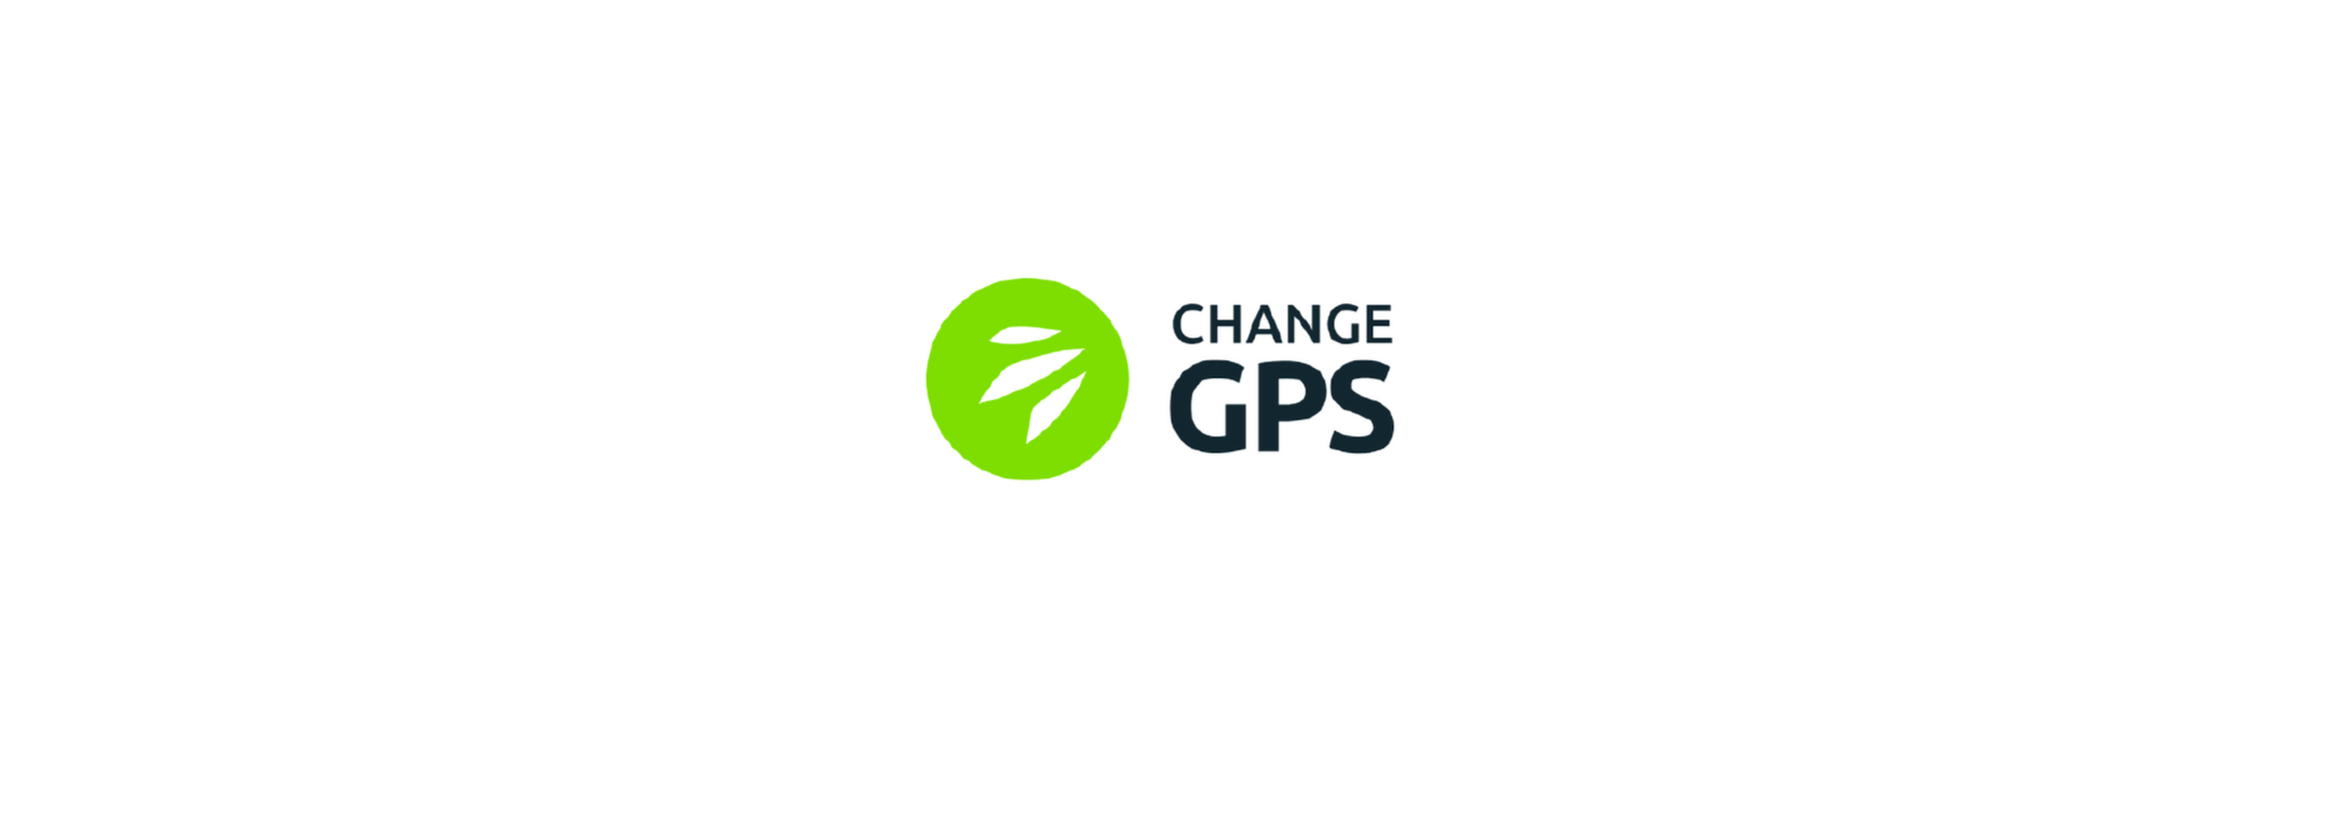 The ChangeGPS logo